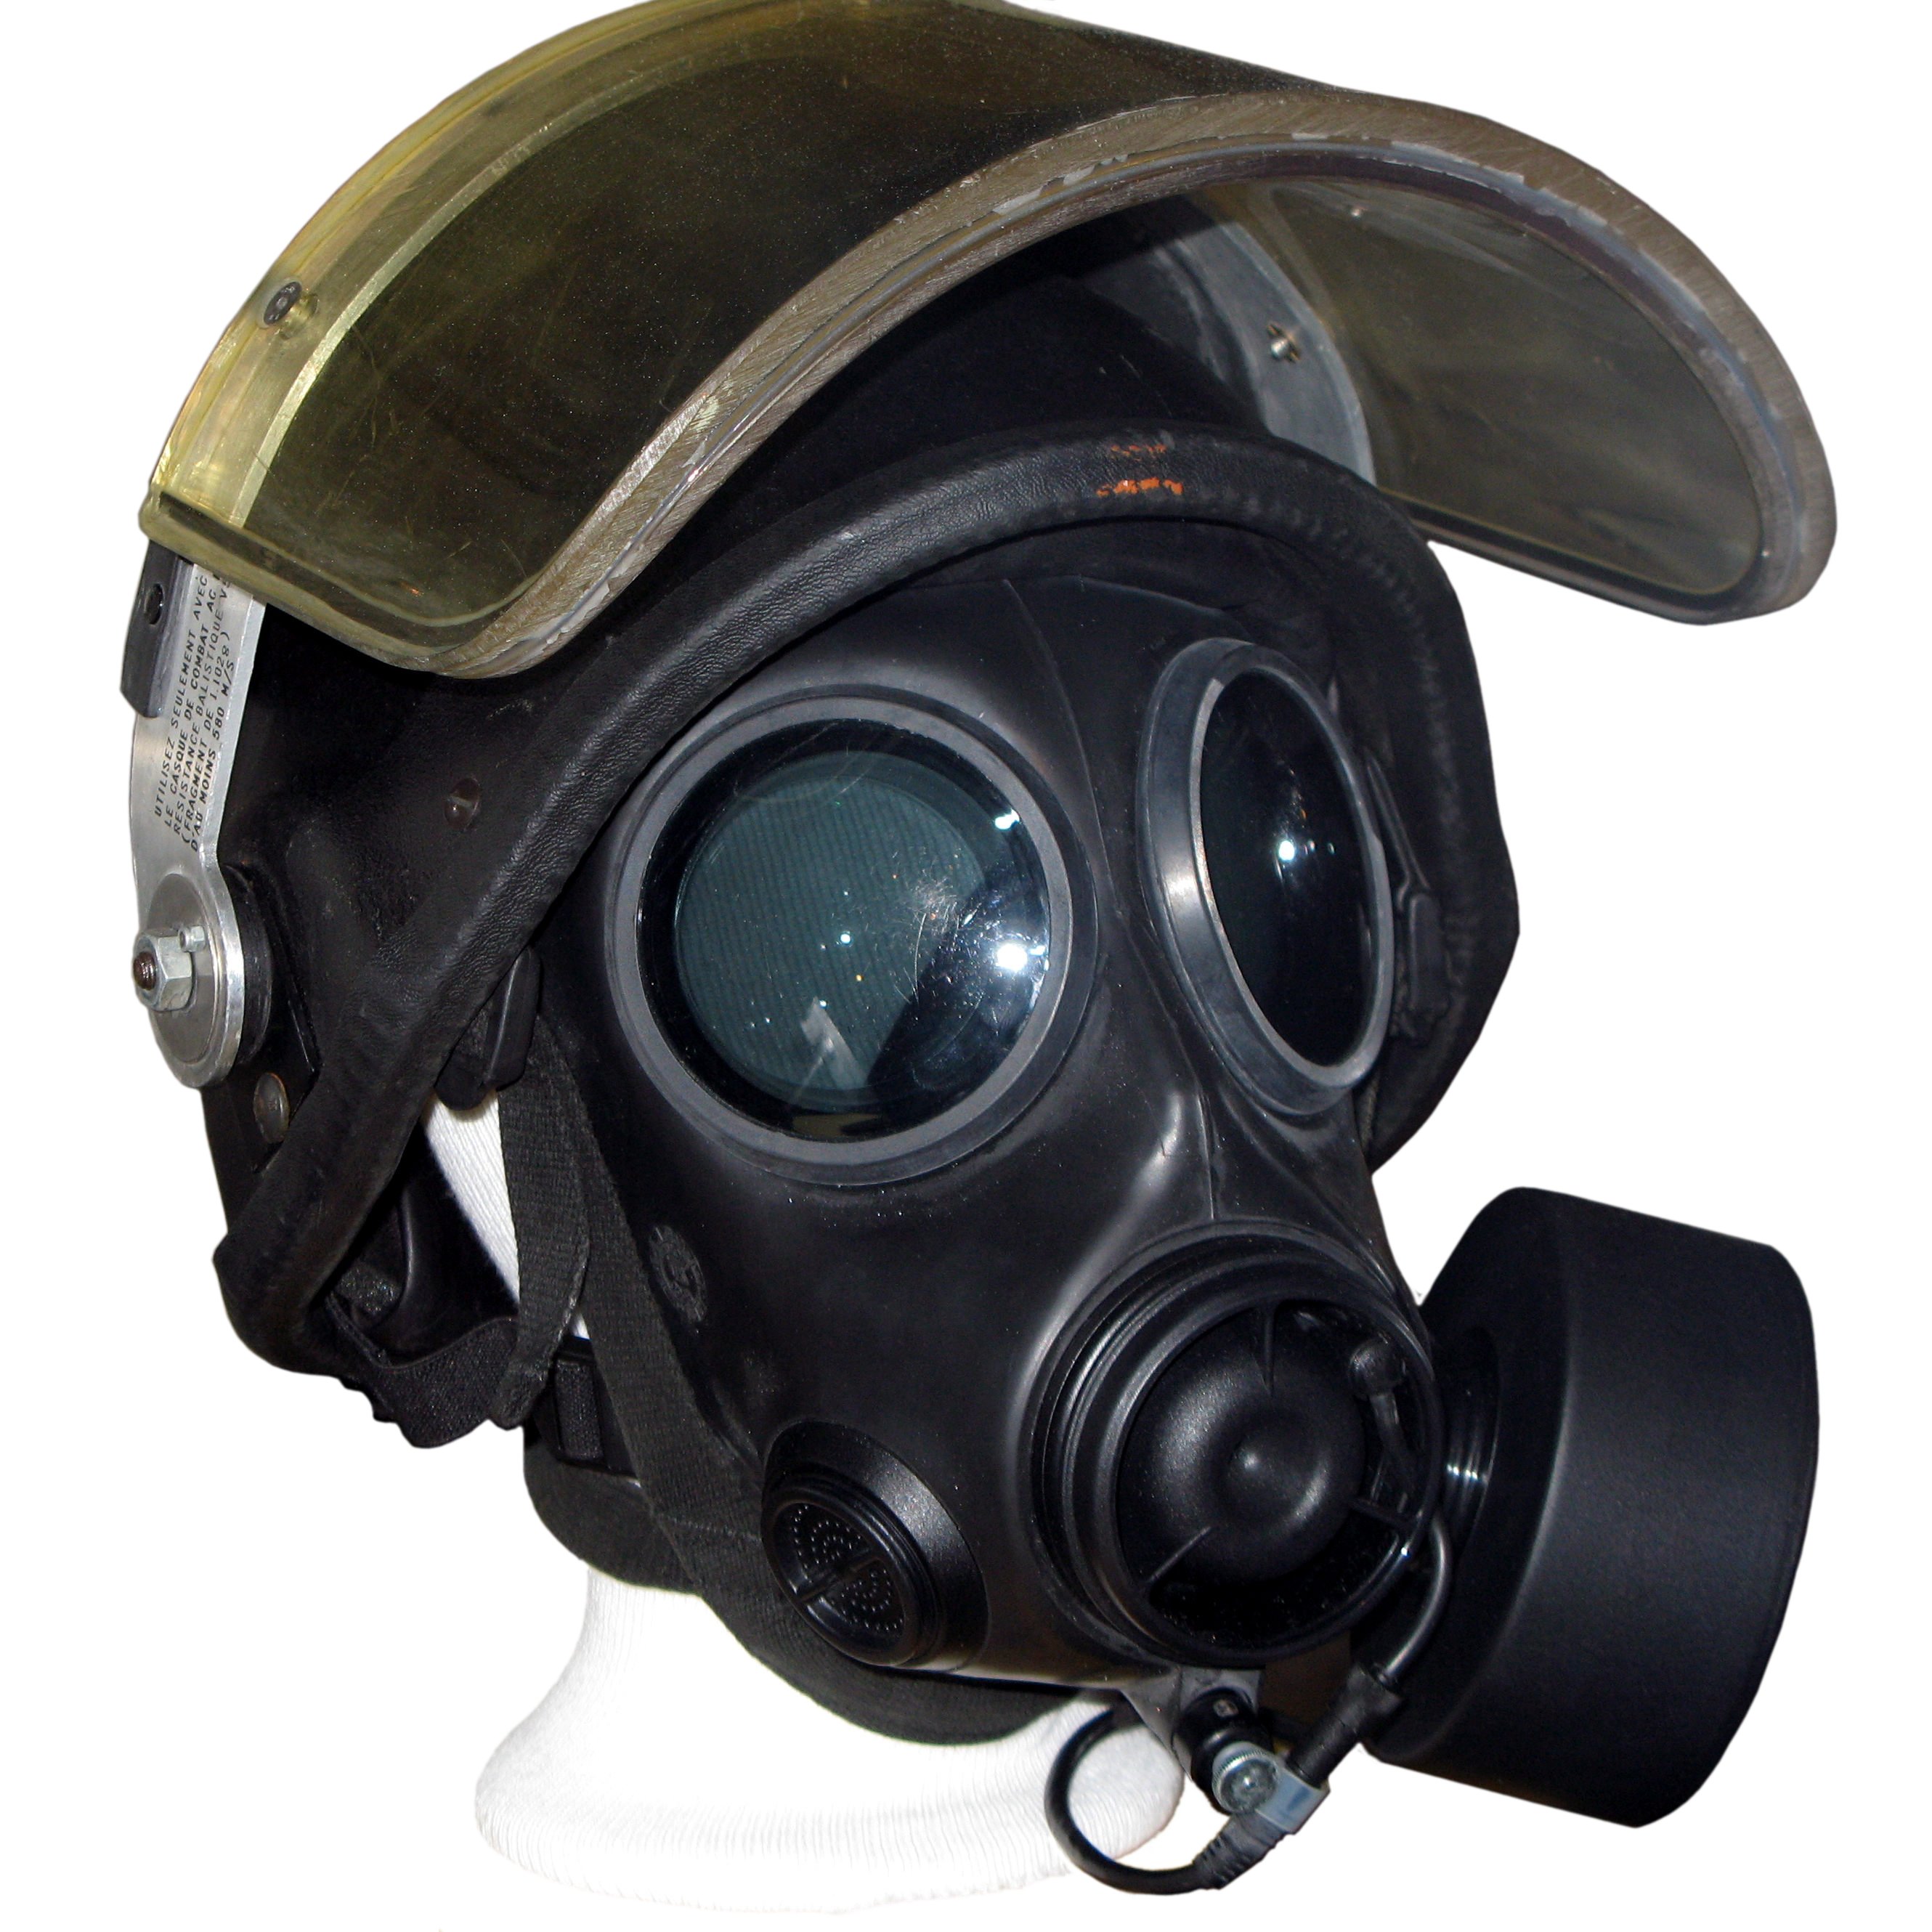 Gas mask img 1619